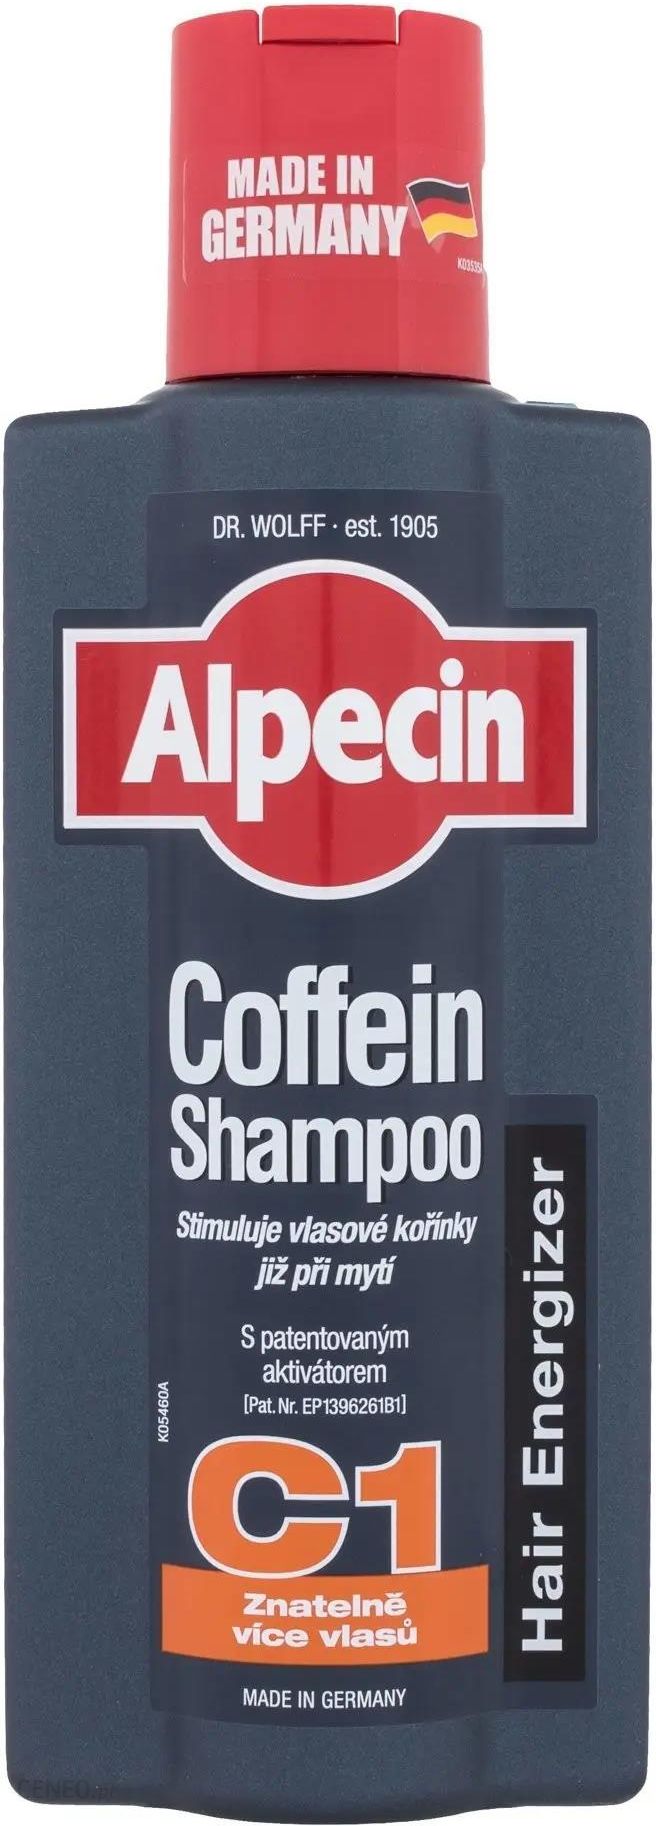 alpecin szampon stymulujacy opinie